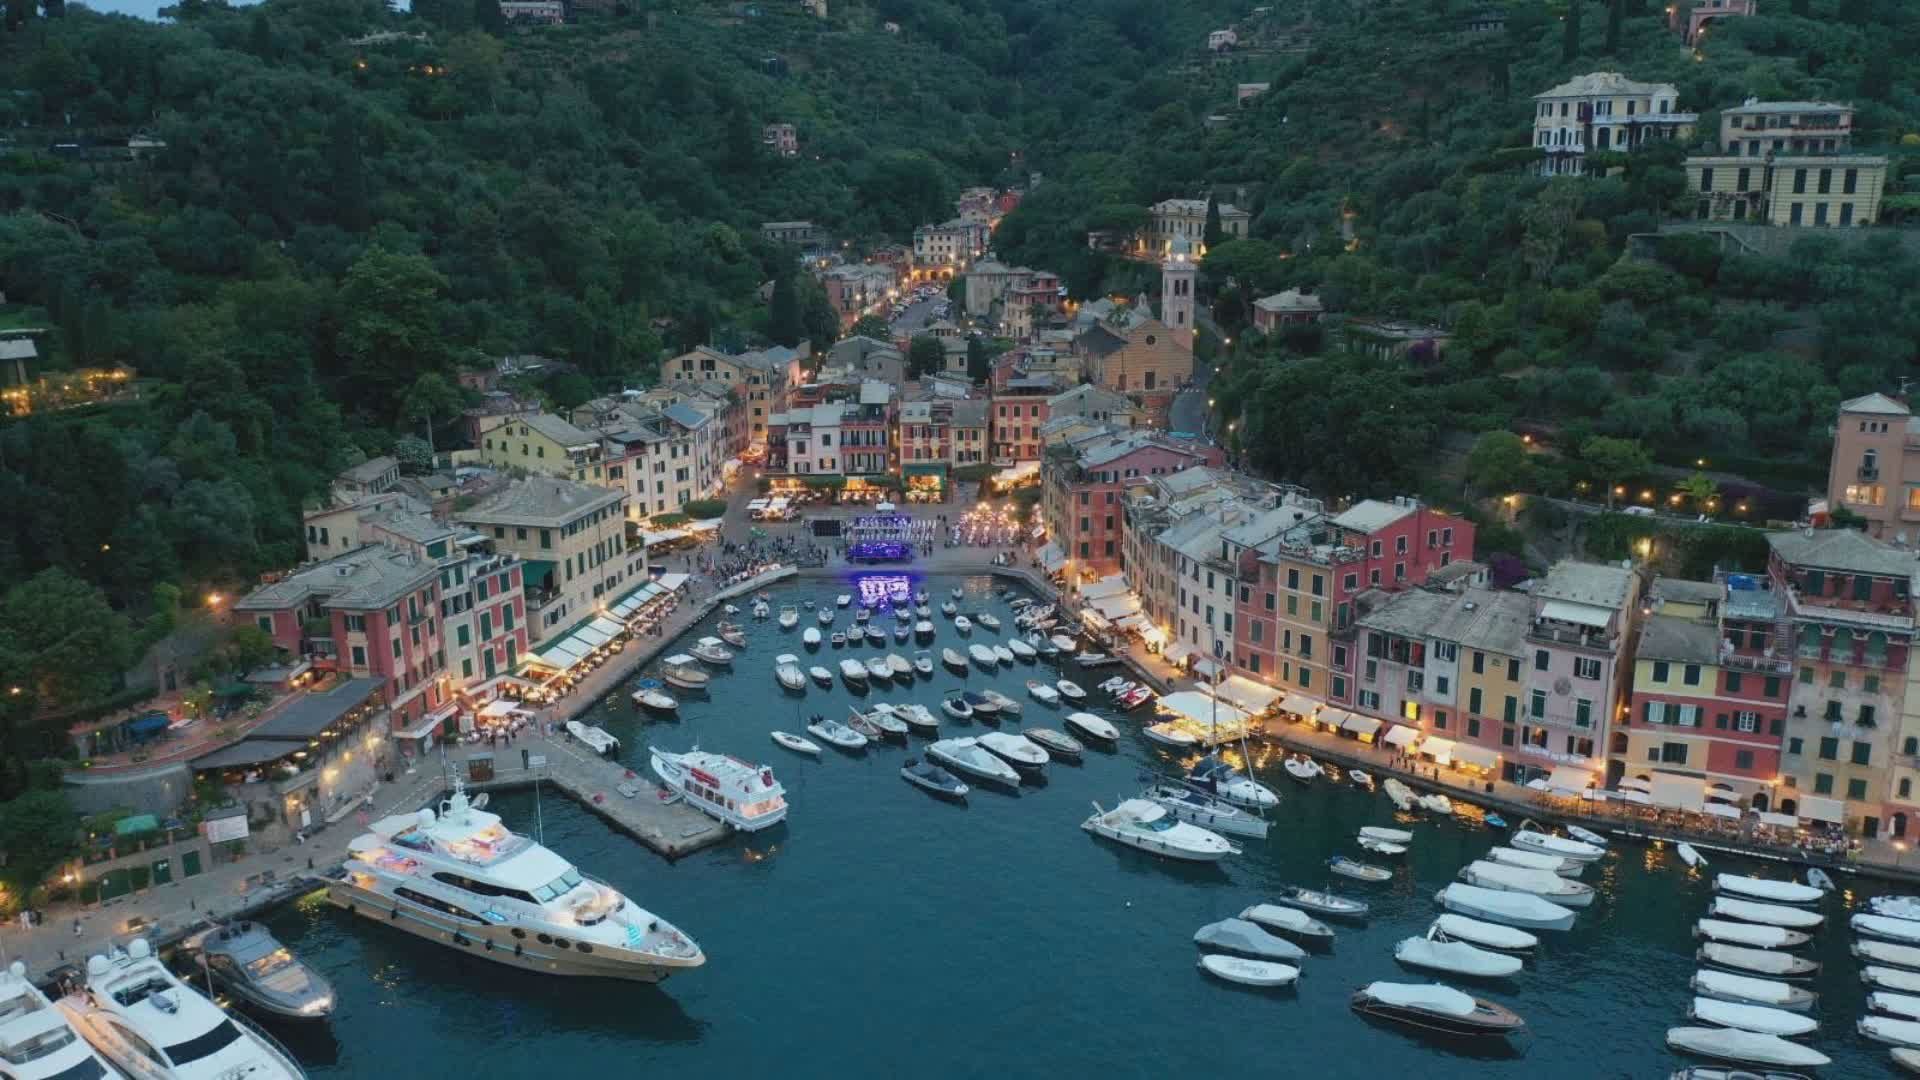 Portofino il Comune più ricco d'Italia, sorpasso su Lajatico dove vive Bocelli. Nella top 20 anche Pieve Ligure e Bergeggi